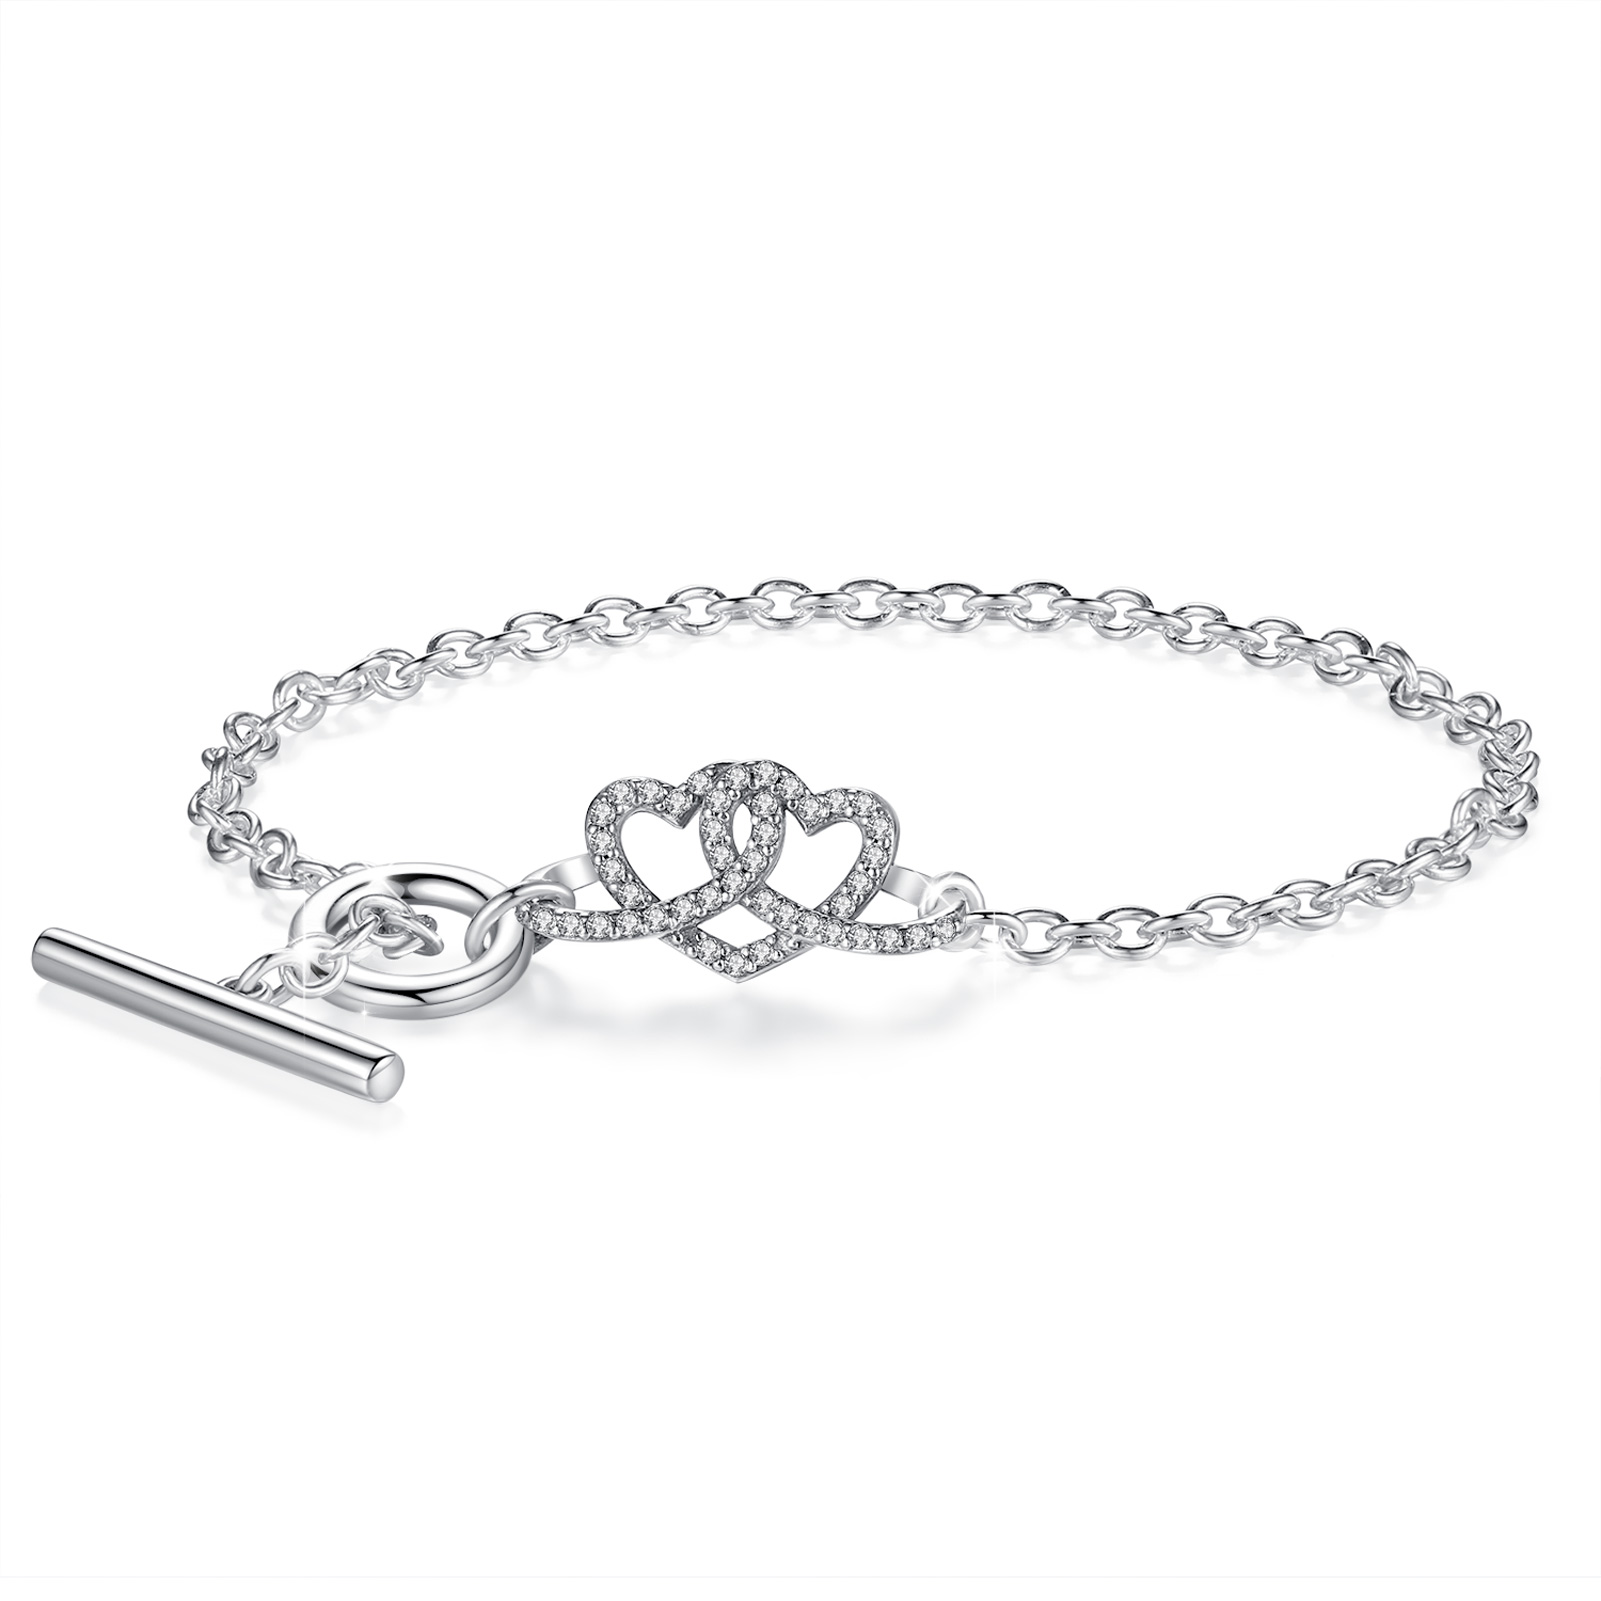 Merryshine Jewelry 925 Sterling Silver Double Heart Bracelet for Women